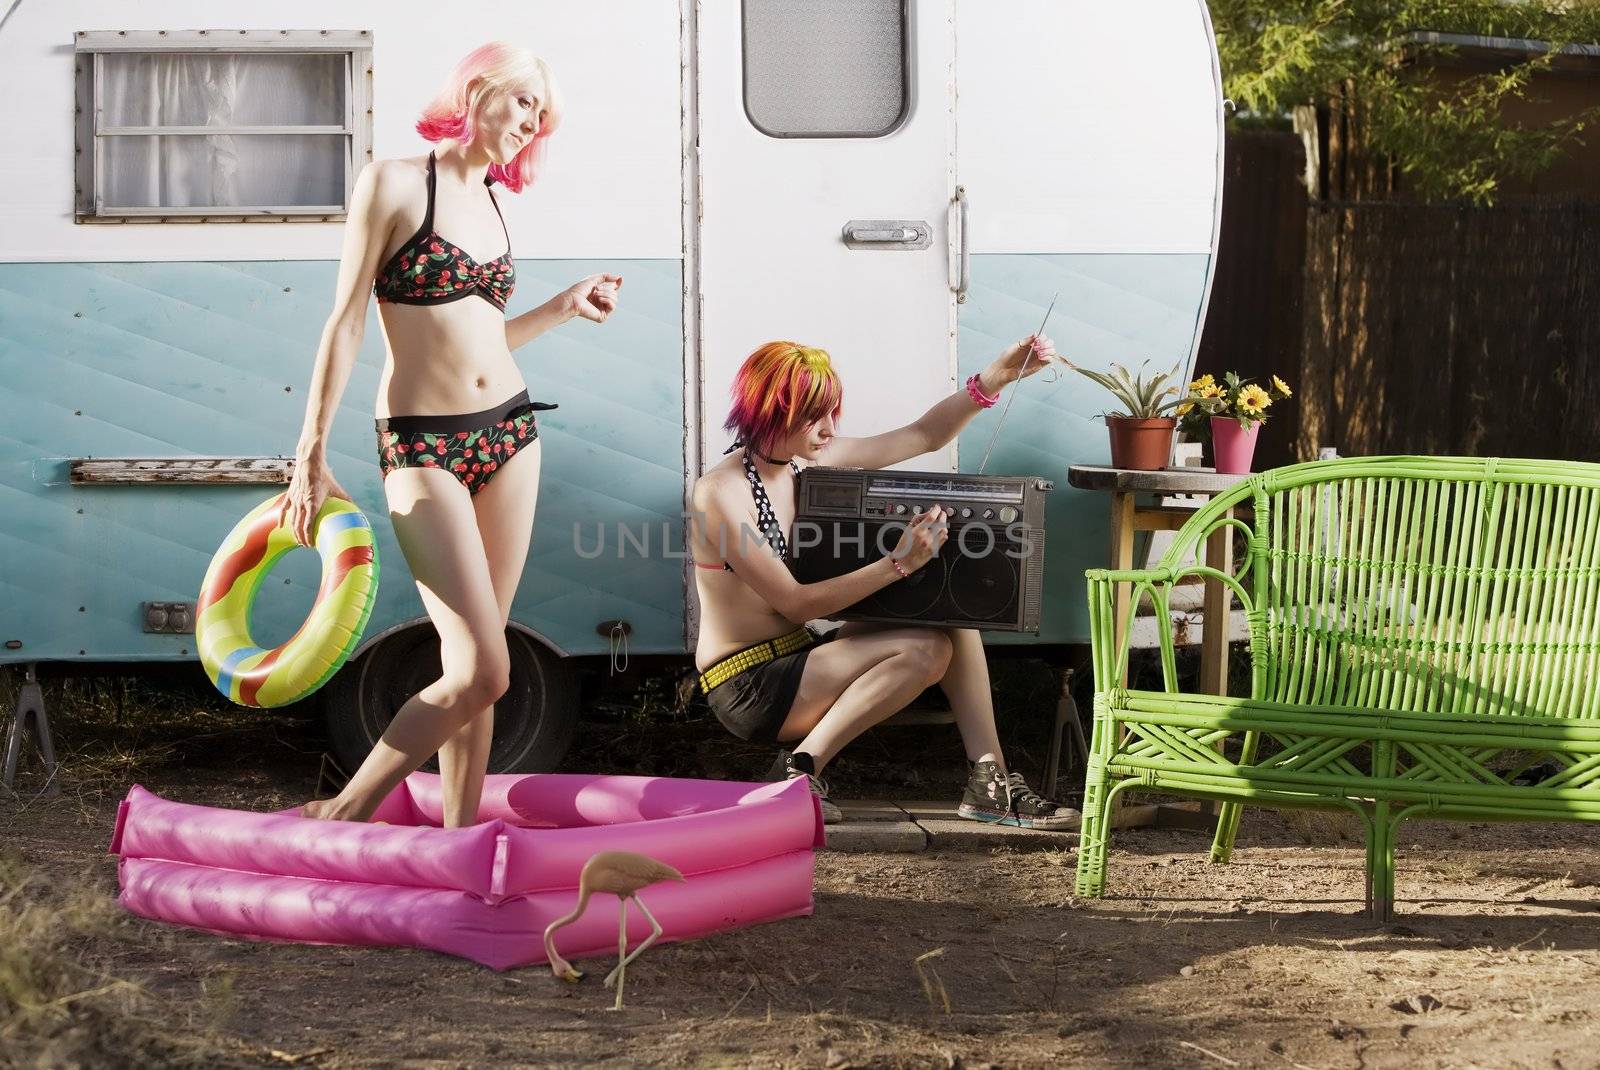 Women doing summer activities outside a travel trailer